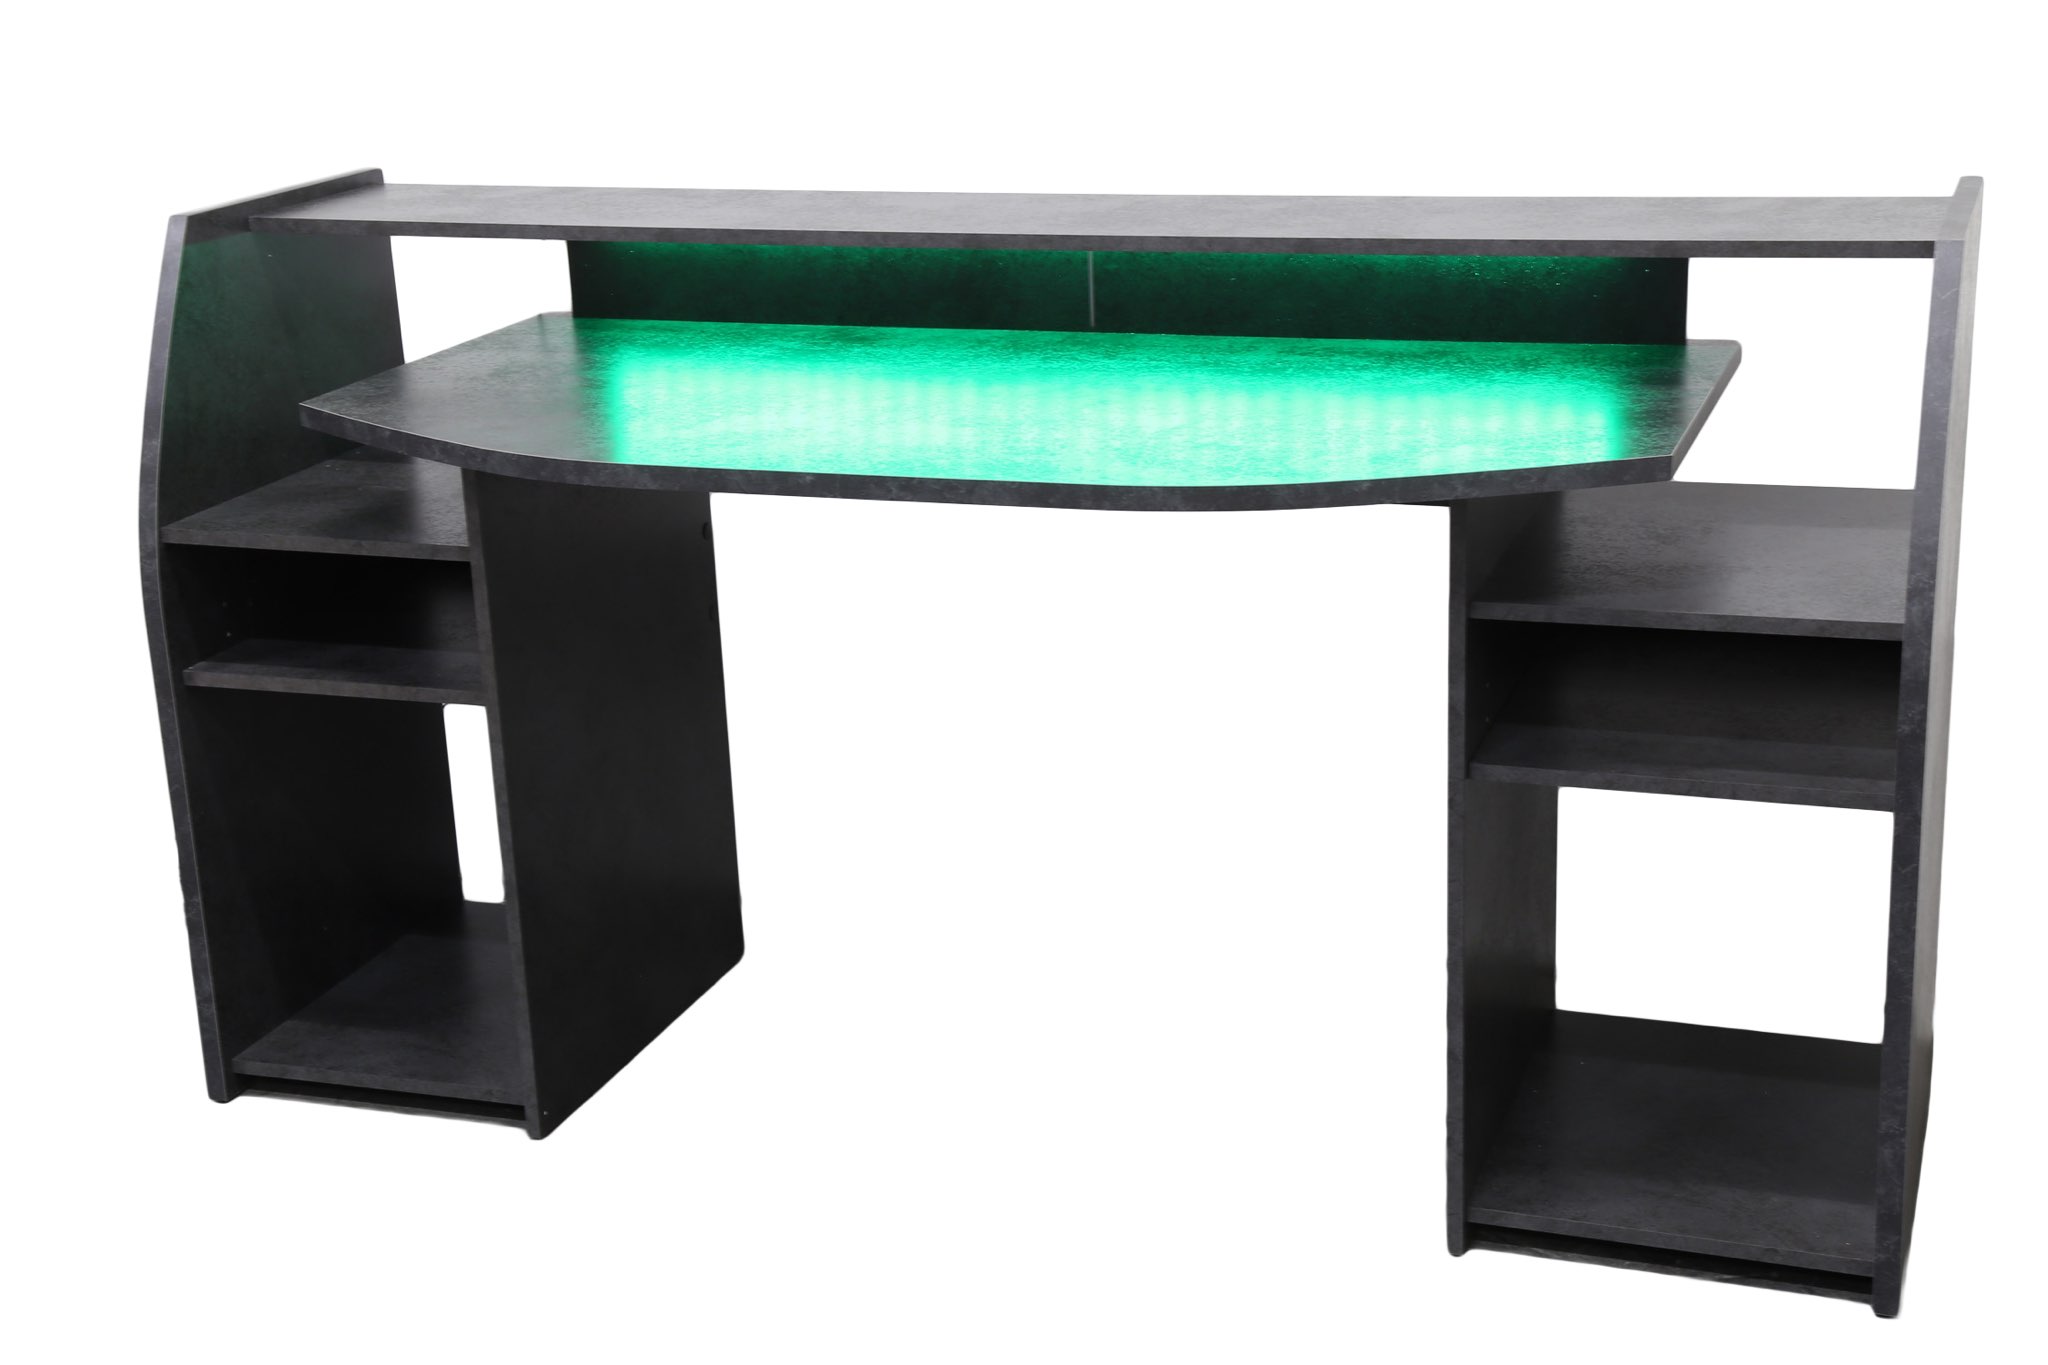 EXCAPE Gaming Tisch Z12 ULTRA mit LED/RGB Beleuchtung 120cm Breit